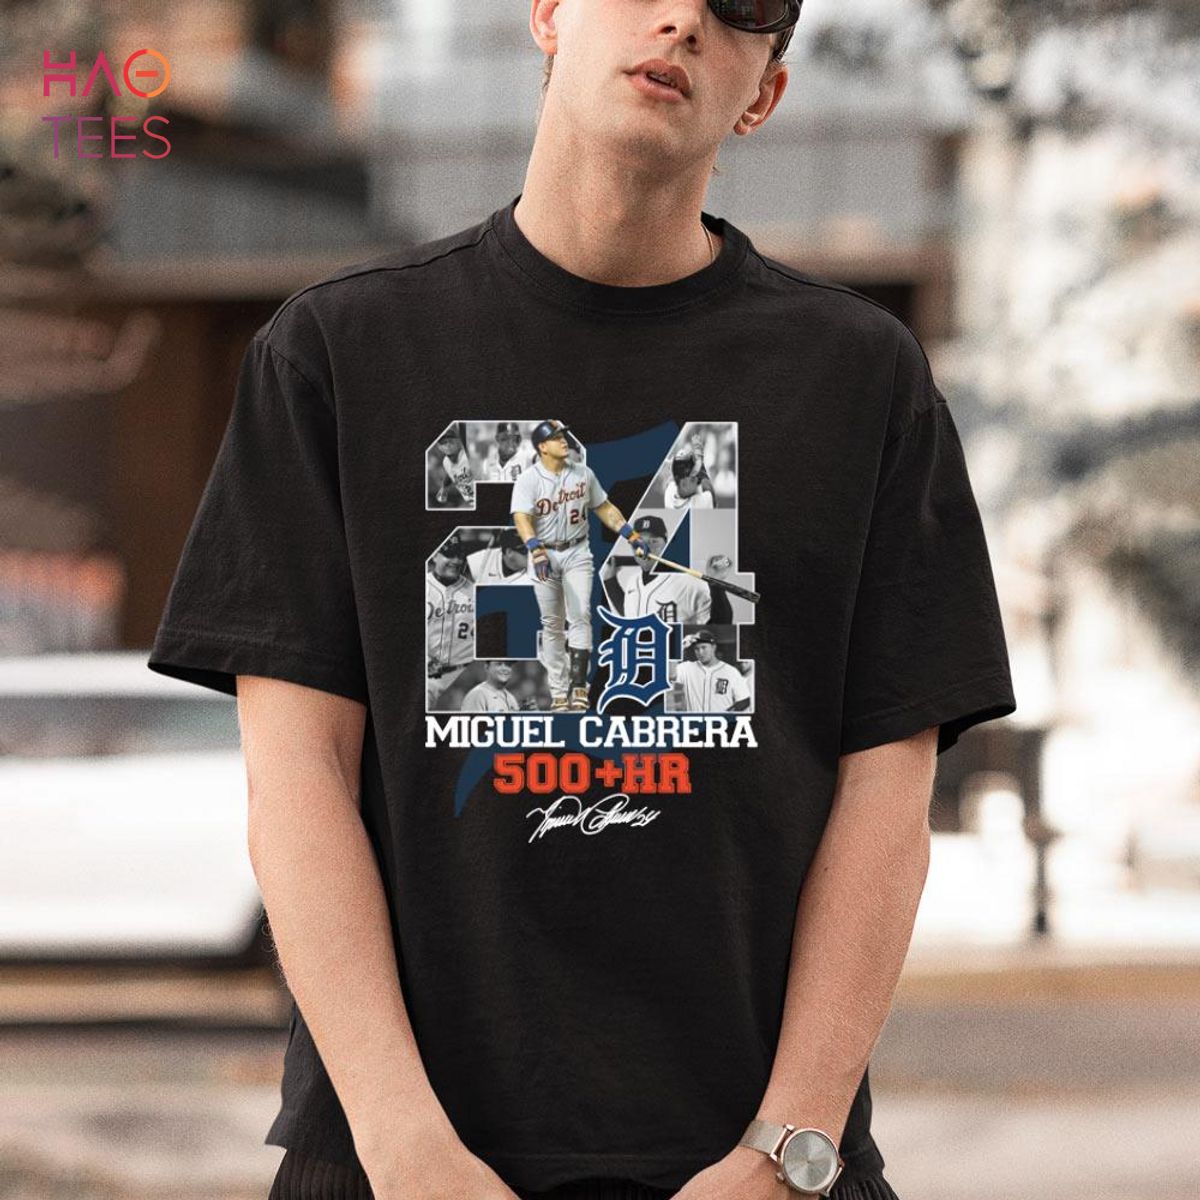 01 Miguel Cabrera 500+ Hr Shirt